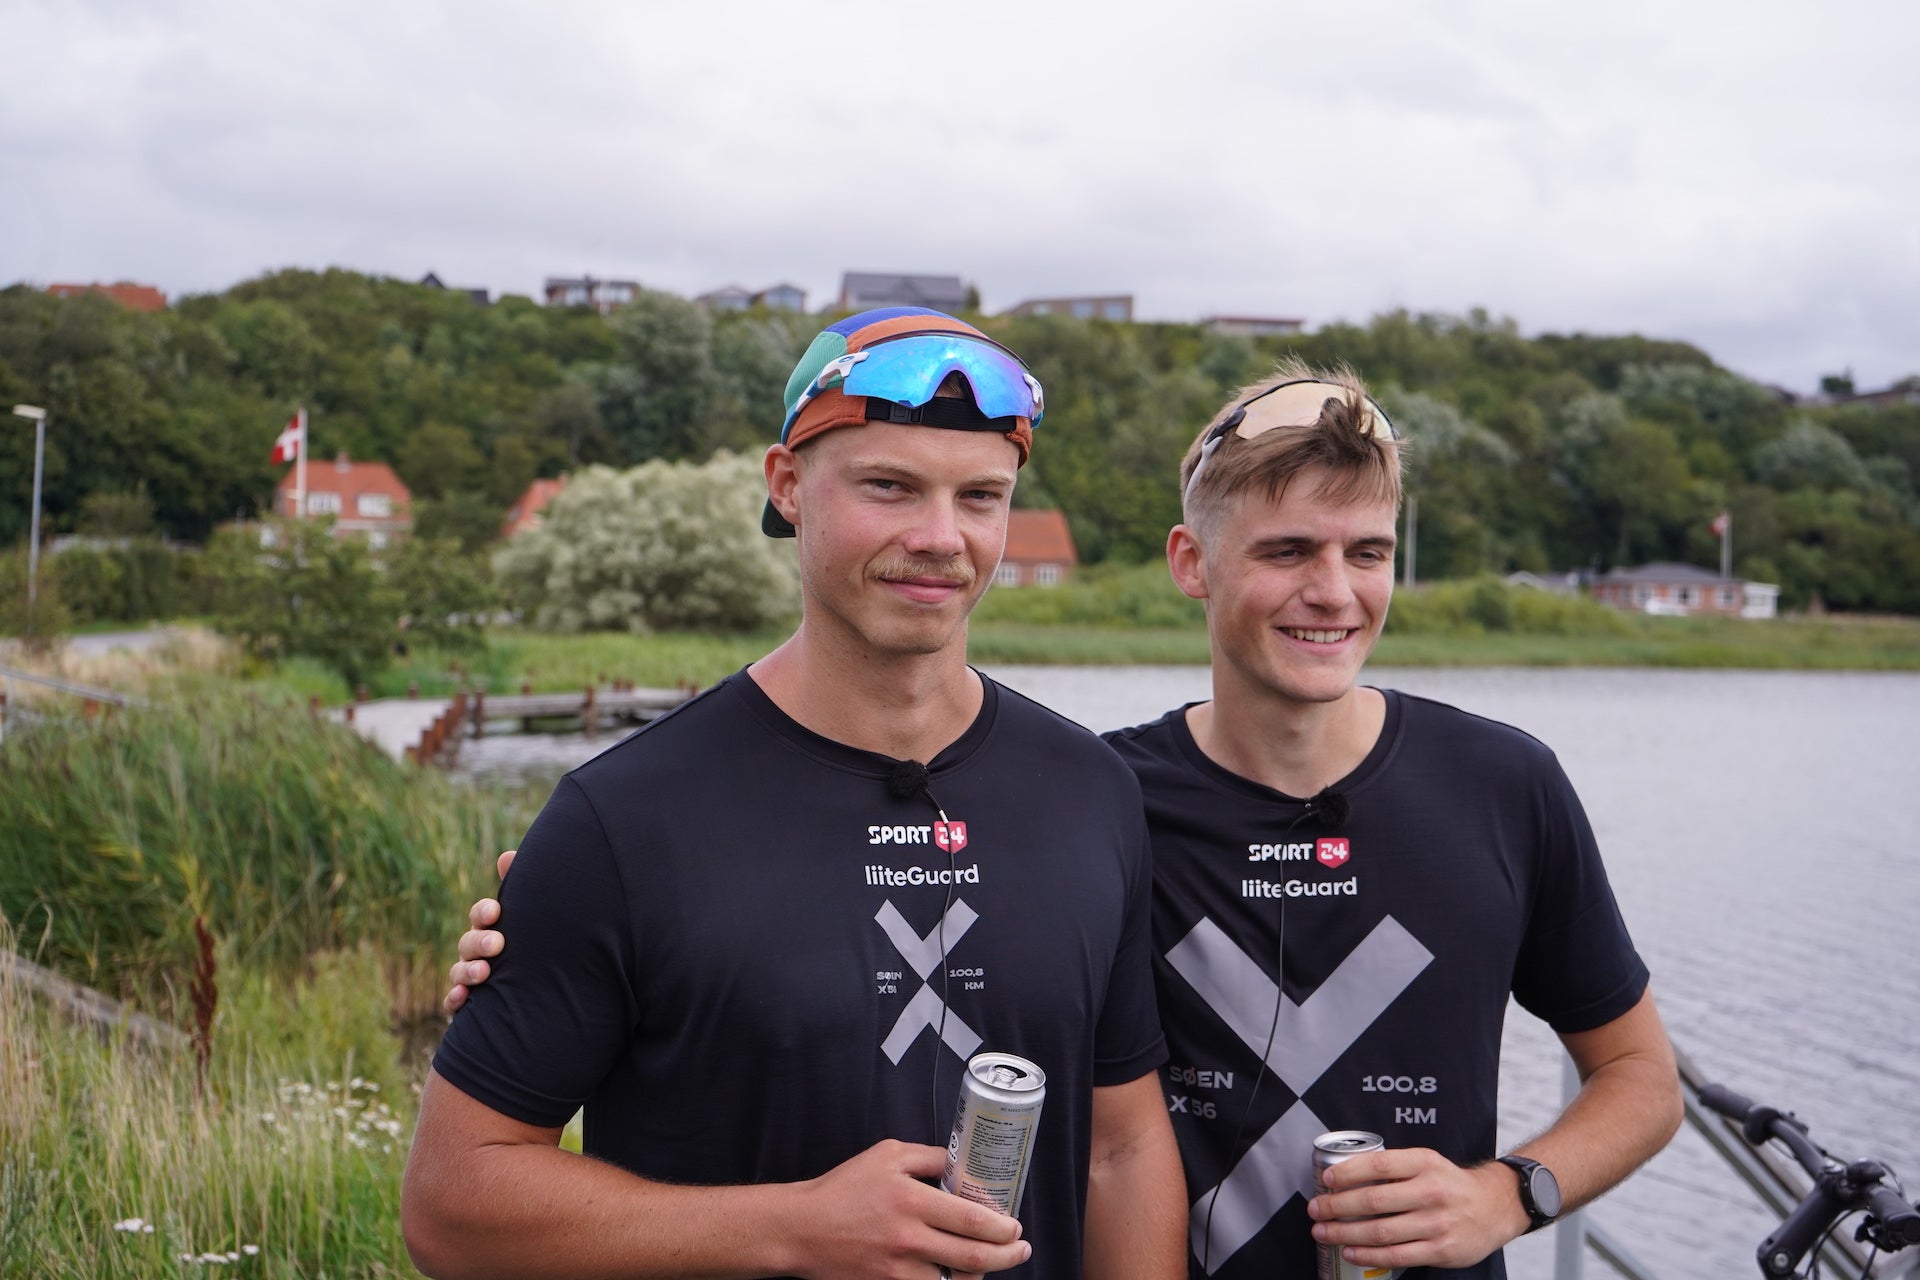 Story: Marcus og Teis løb 100 kilometer rundt om Lemvig Sø for at samle penge ind til Psykiatrifonden